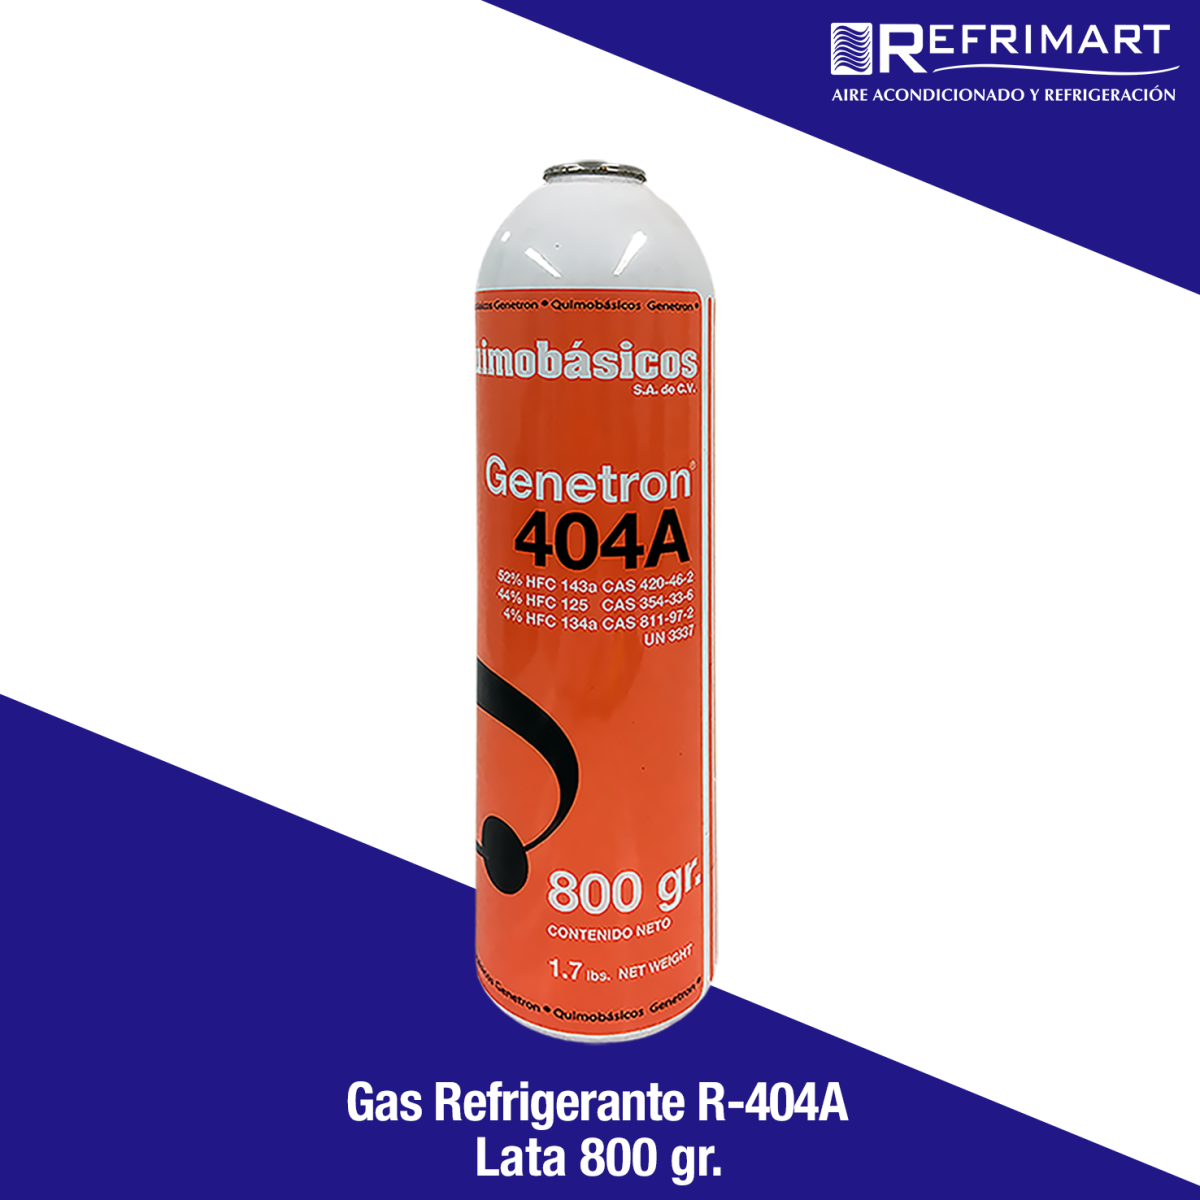 Gas Refrigerante R404A - 800 gr. Refrimart México S.A de C.V. - Aire Acondicionado y Refrigeración